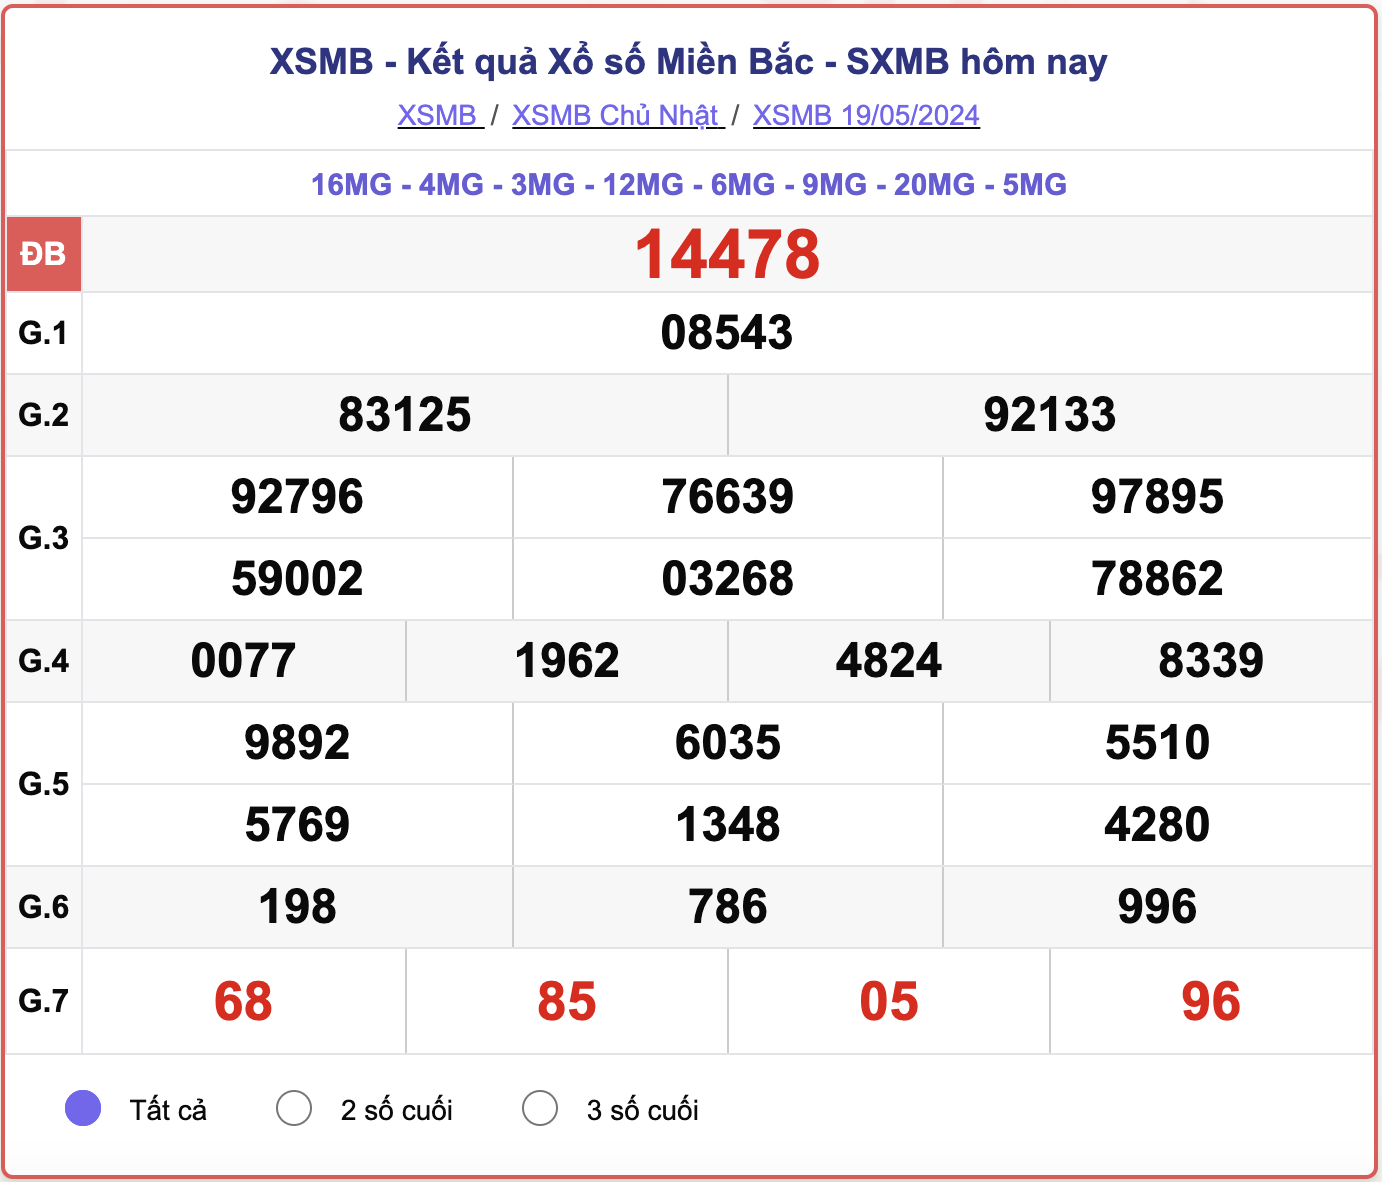 XSMB 21/5 - Kết quả xổ số miền Bắc hôm nay 21/5/2024 - KQXSMB 21/5- Ảnh 2.